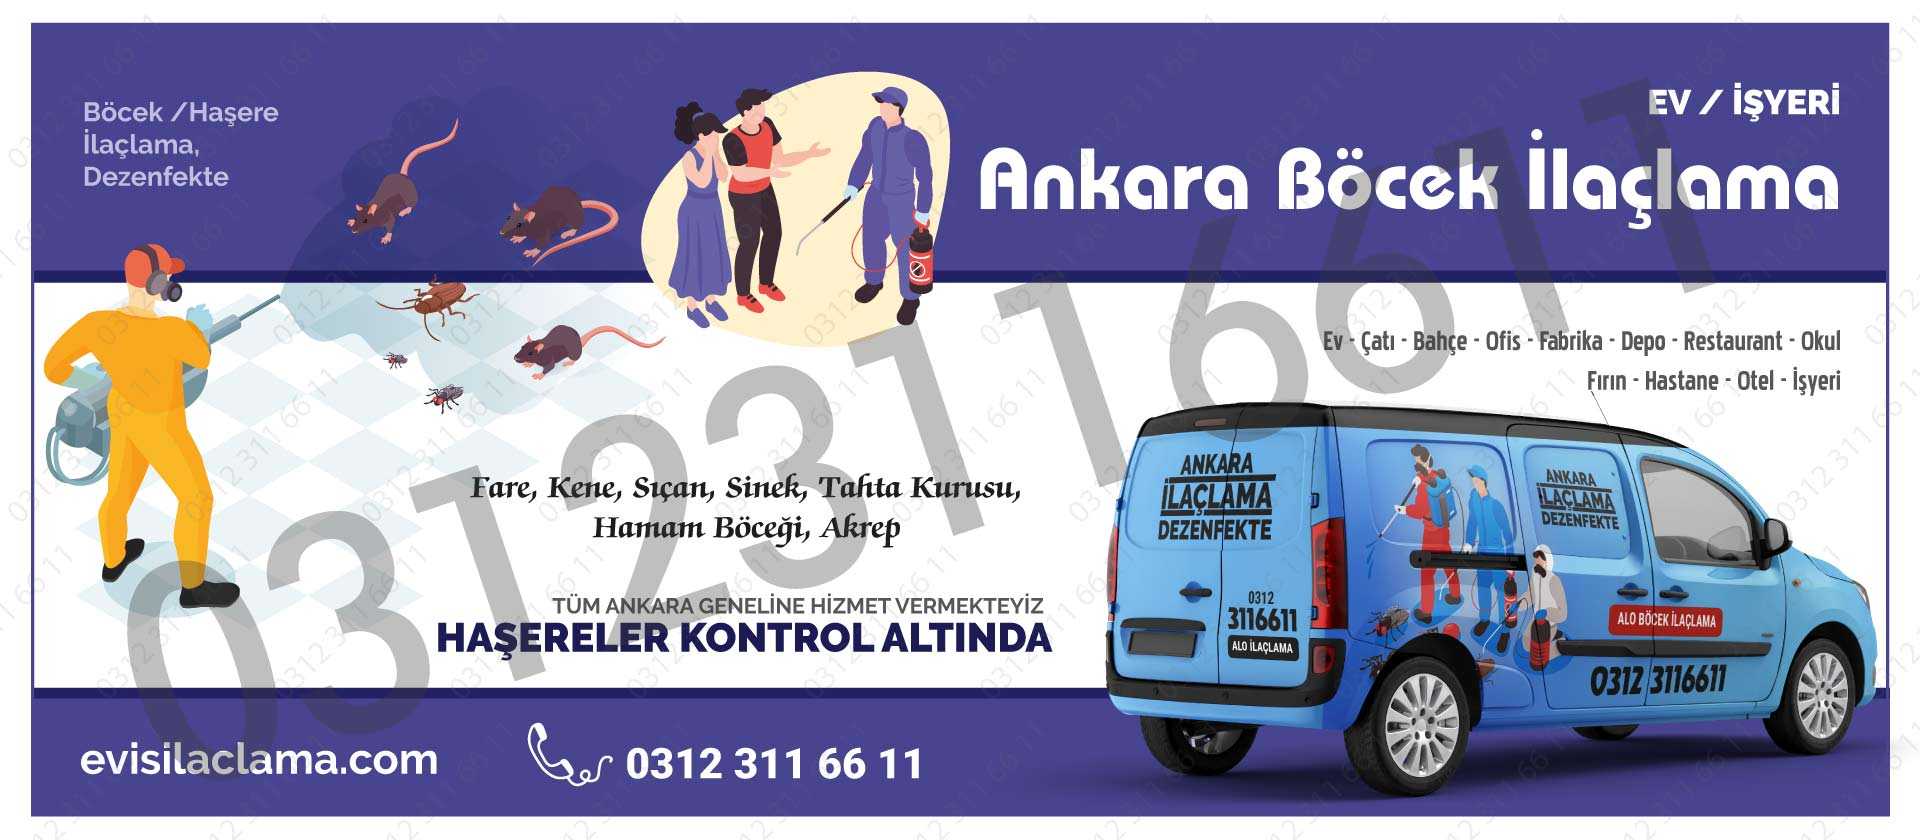 Böcek İlaçlama Ankara 03123116611